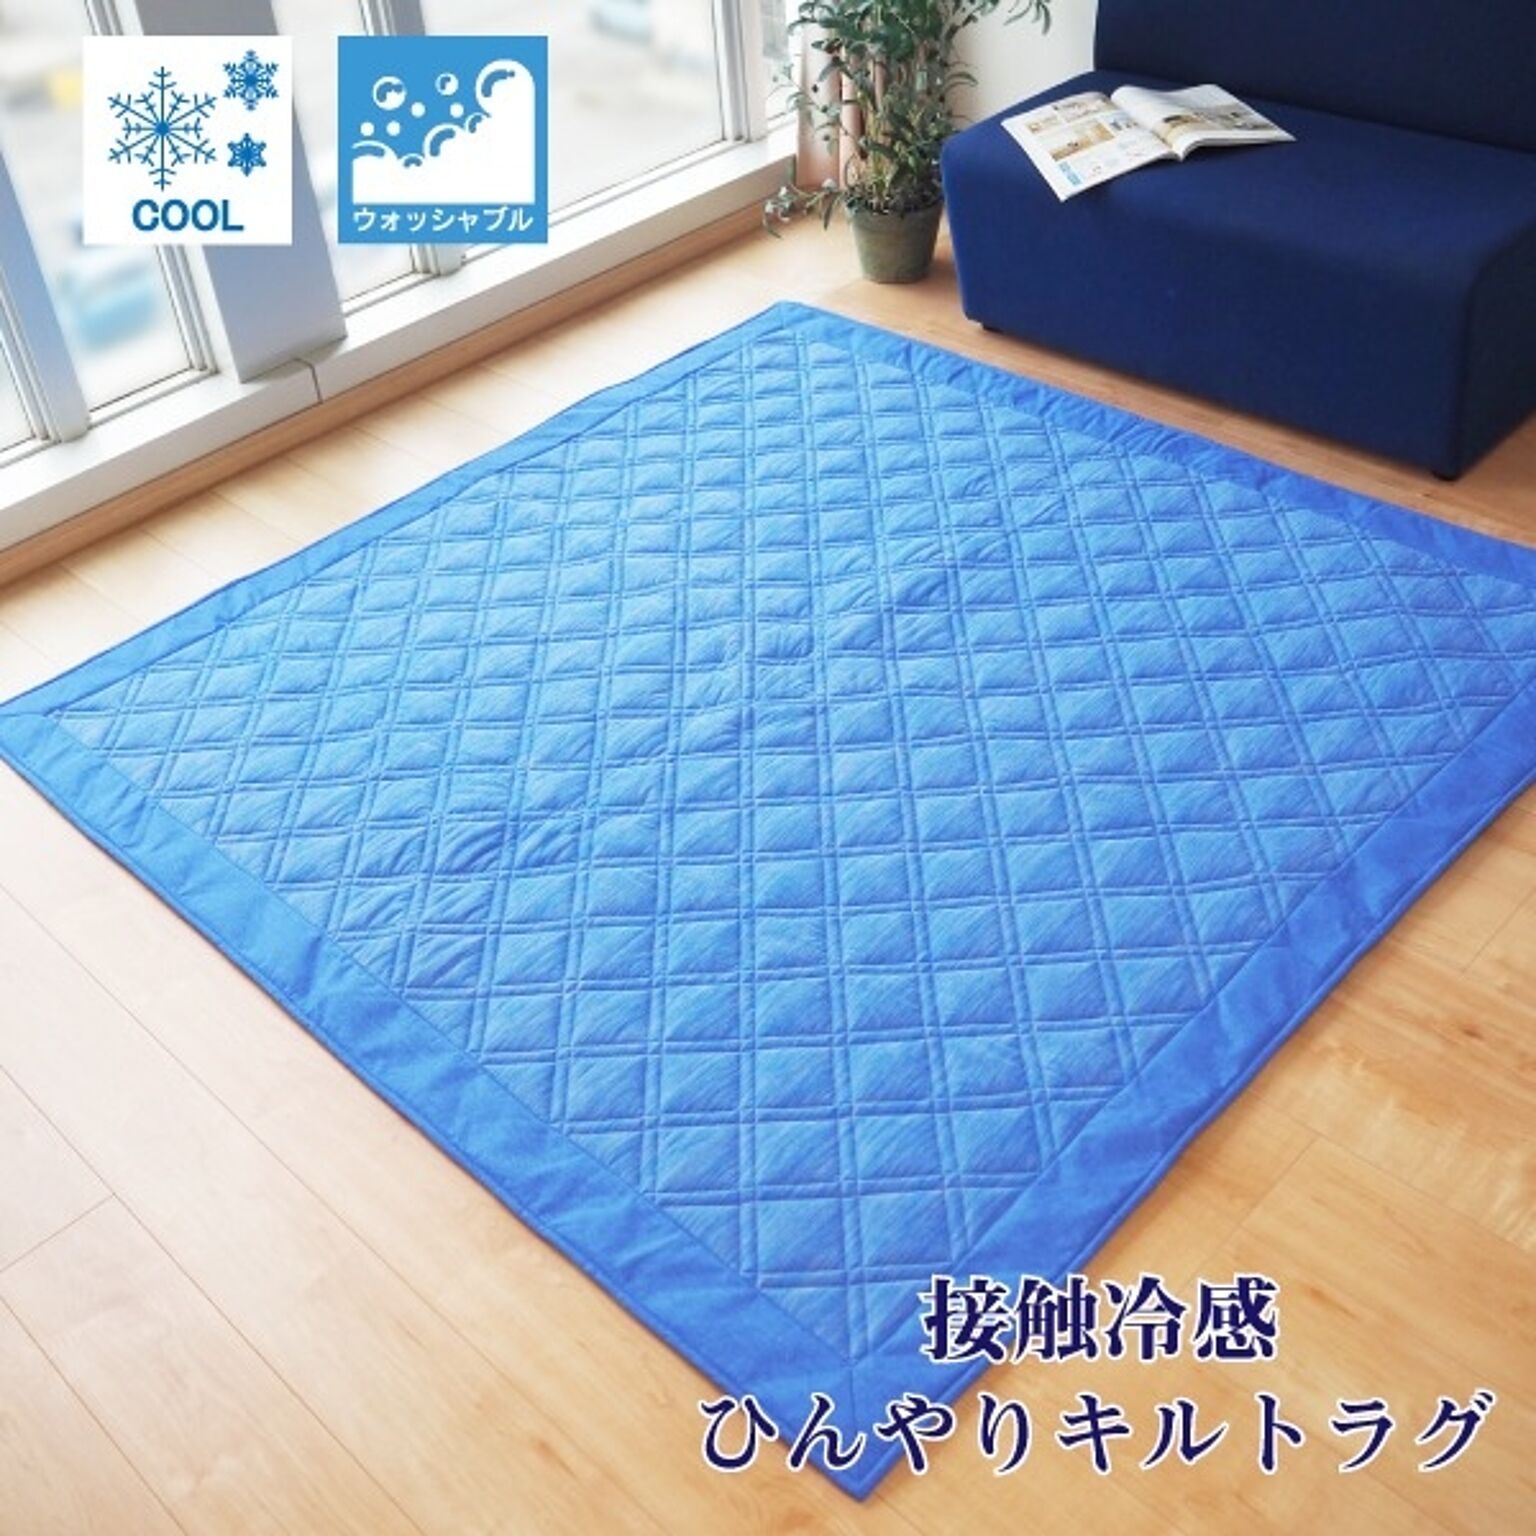 ラグマット 絨毯 約3畳 約180cm×230cm ブルー 洗える お手入れ簡単 COOL 接触冷感 ひんやりラグ リビング ダイニング【代引不可】